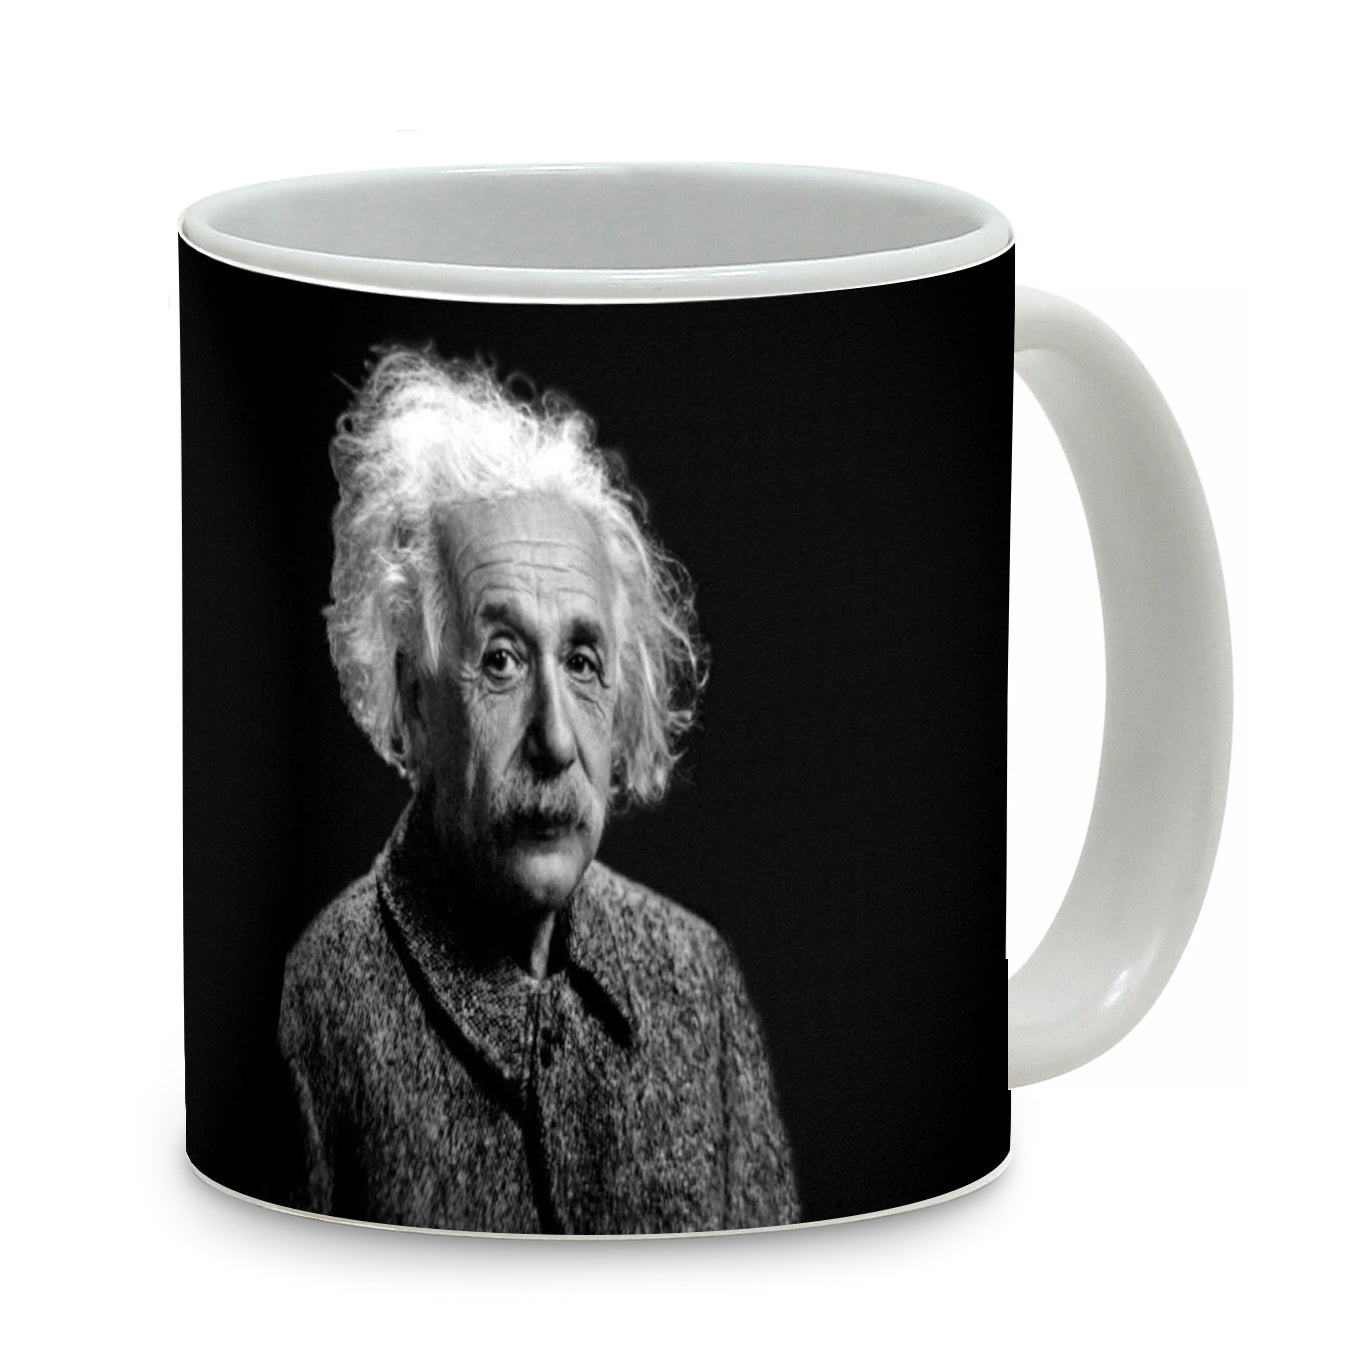 SUBLIMART: Iconic - Albert Einstein Mug (03)